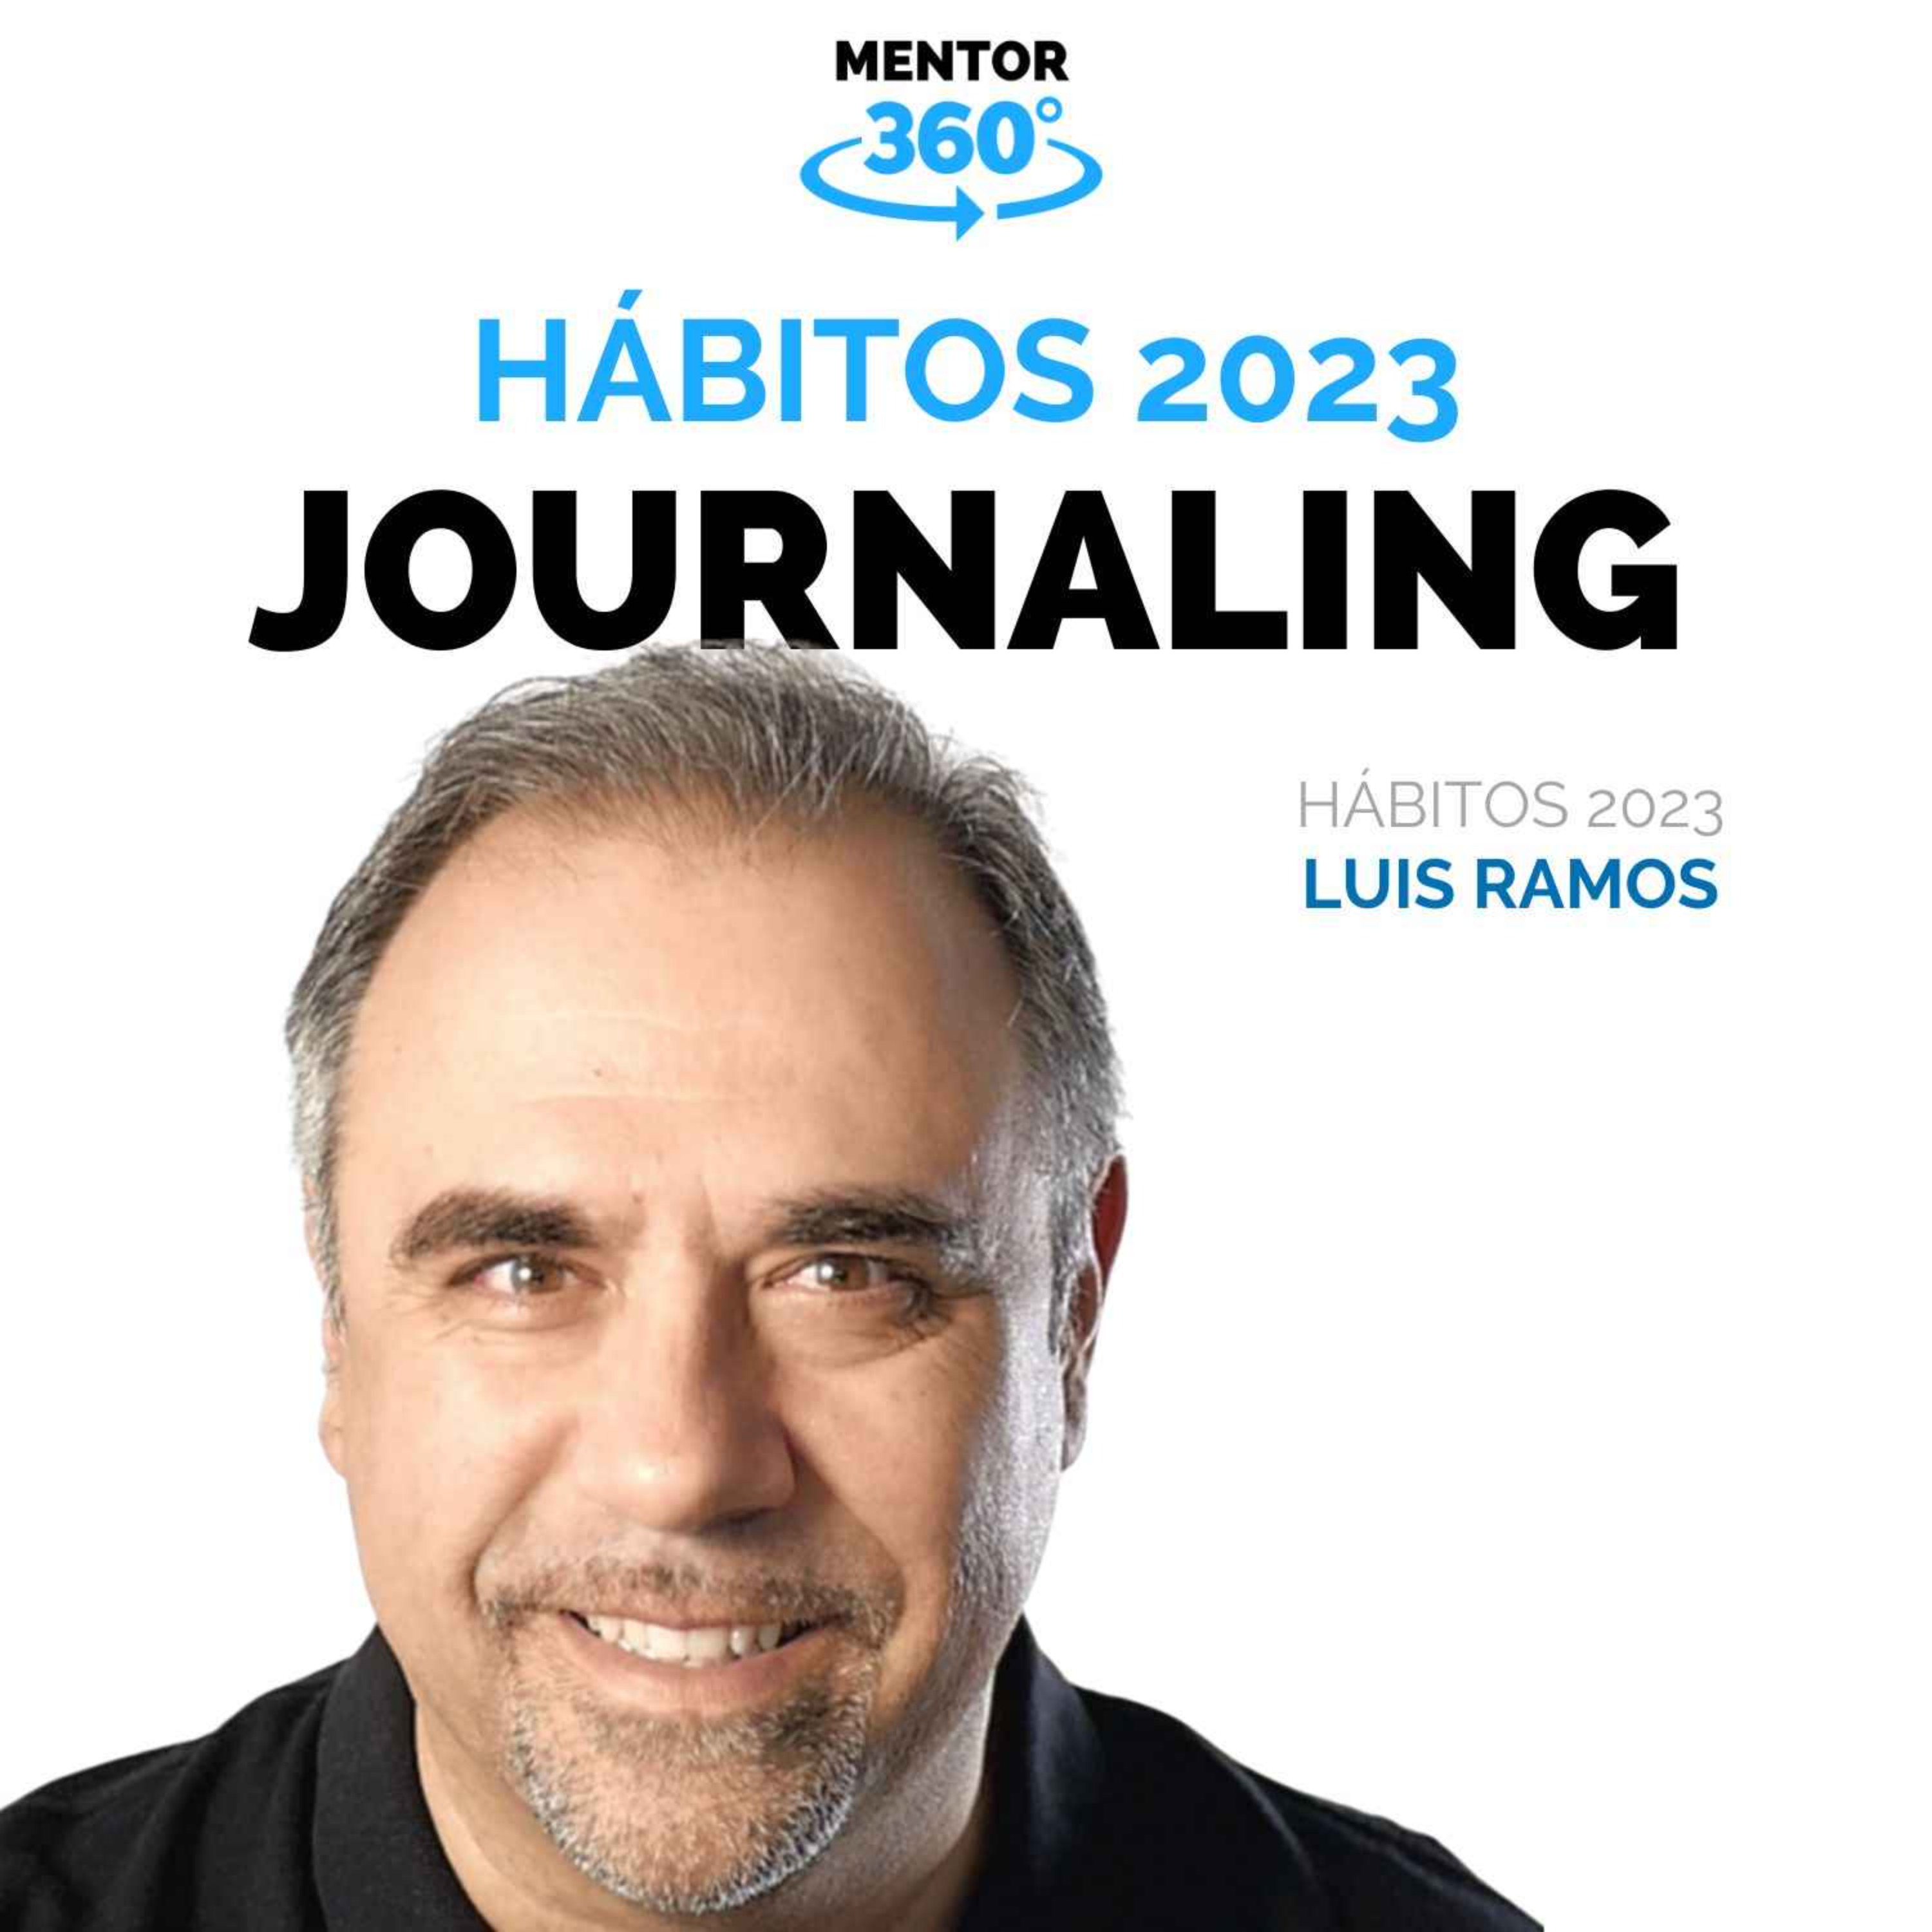 Hábitos 2023 - El Poder del Journaling - Luis Ramos - MENTOR360